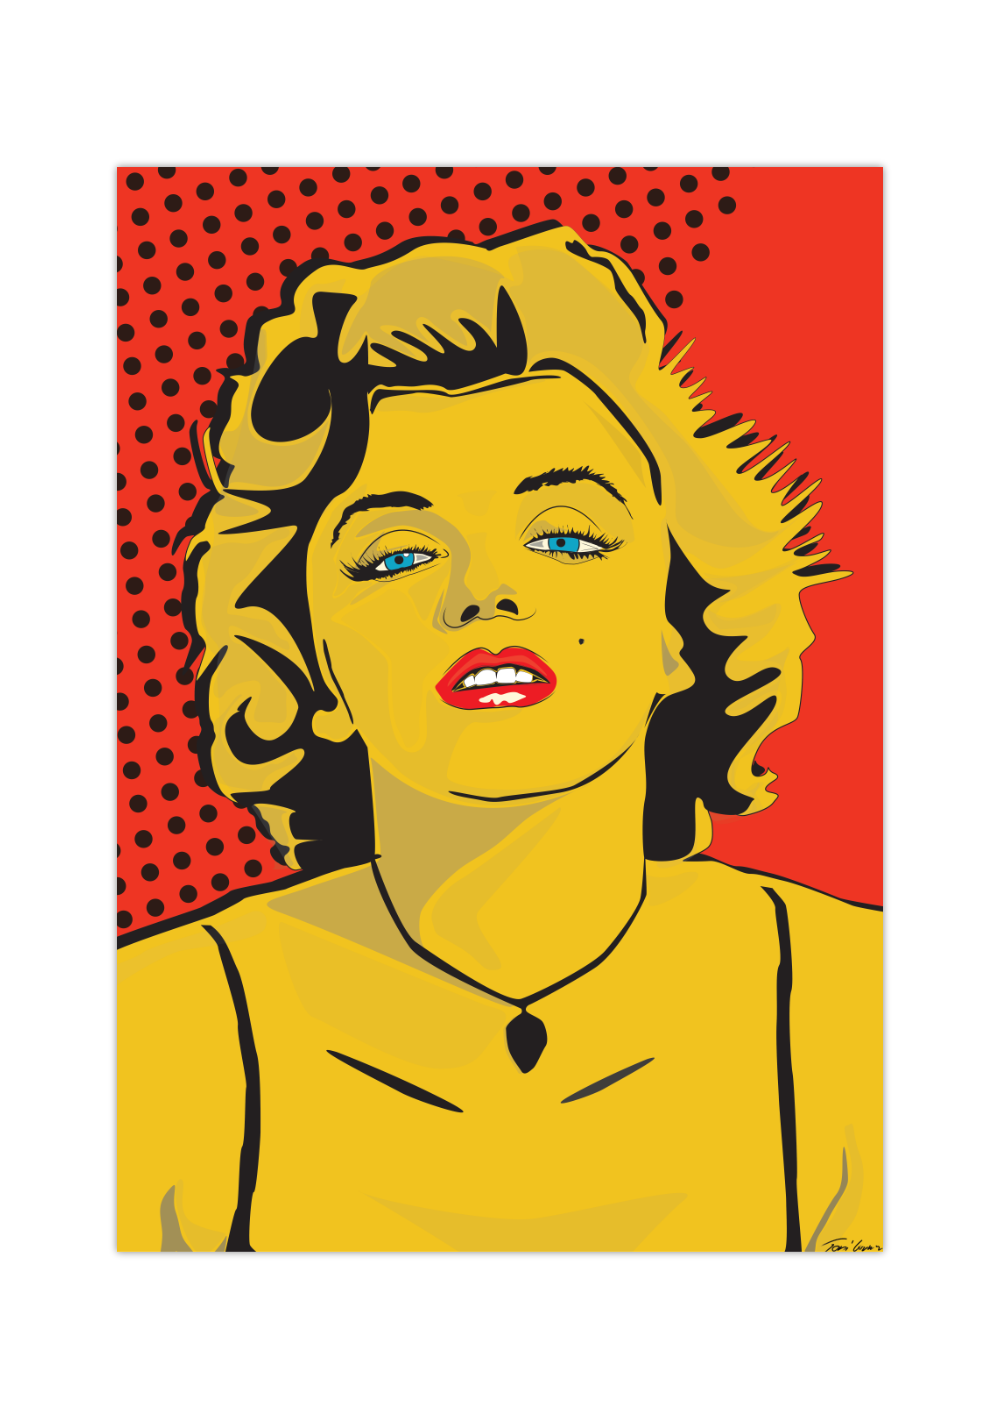 Das Poster zeigt die berühmte Schauspielerin und Sexsymbol der 50er Jahre Marilyn Monroe im modernen Pop Art Stil. 